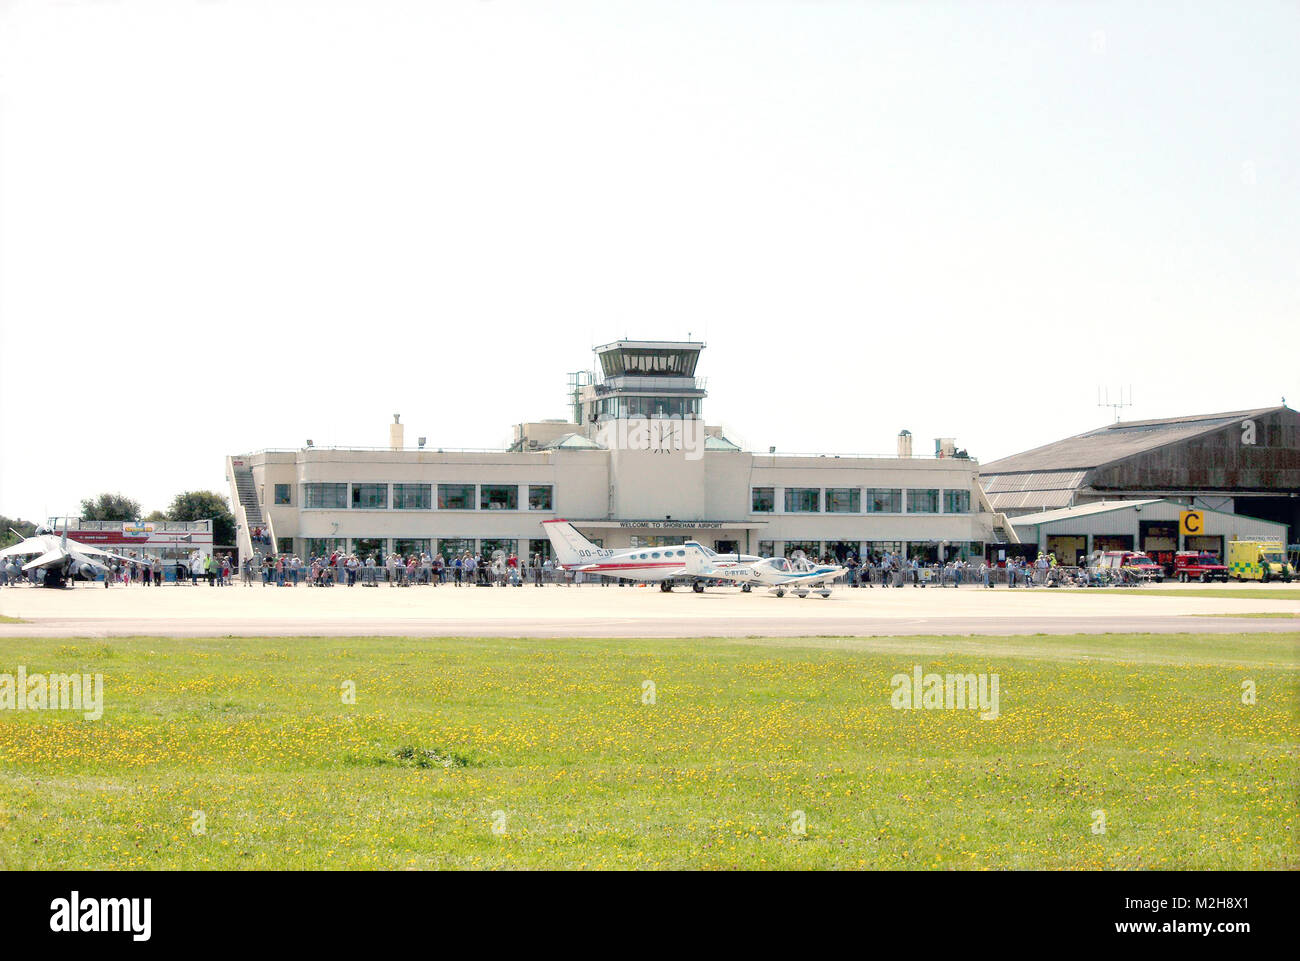 Tour de contrôle de la circulation aérienne et bâtiment principal du terminal, l'aéroport de Shoreham, Shoreham-by-Sea, West Sussex, Angleterre. Banque D'Images